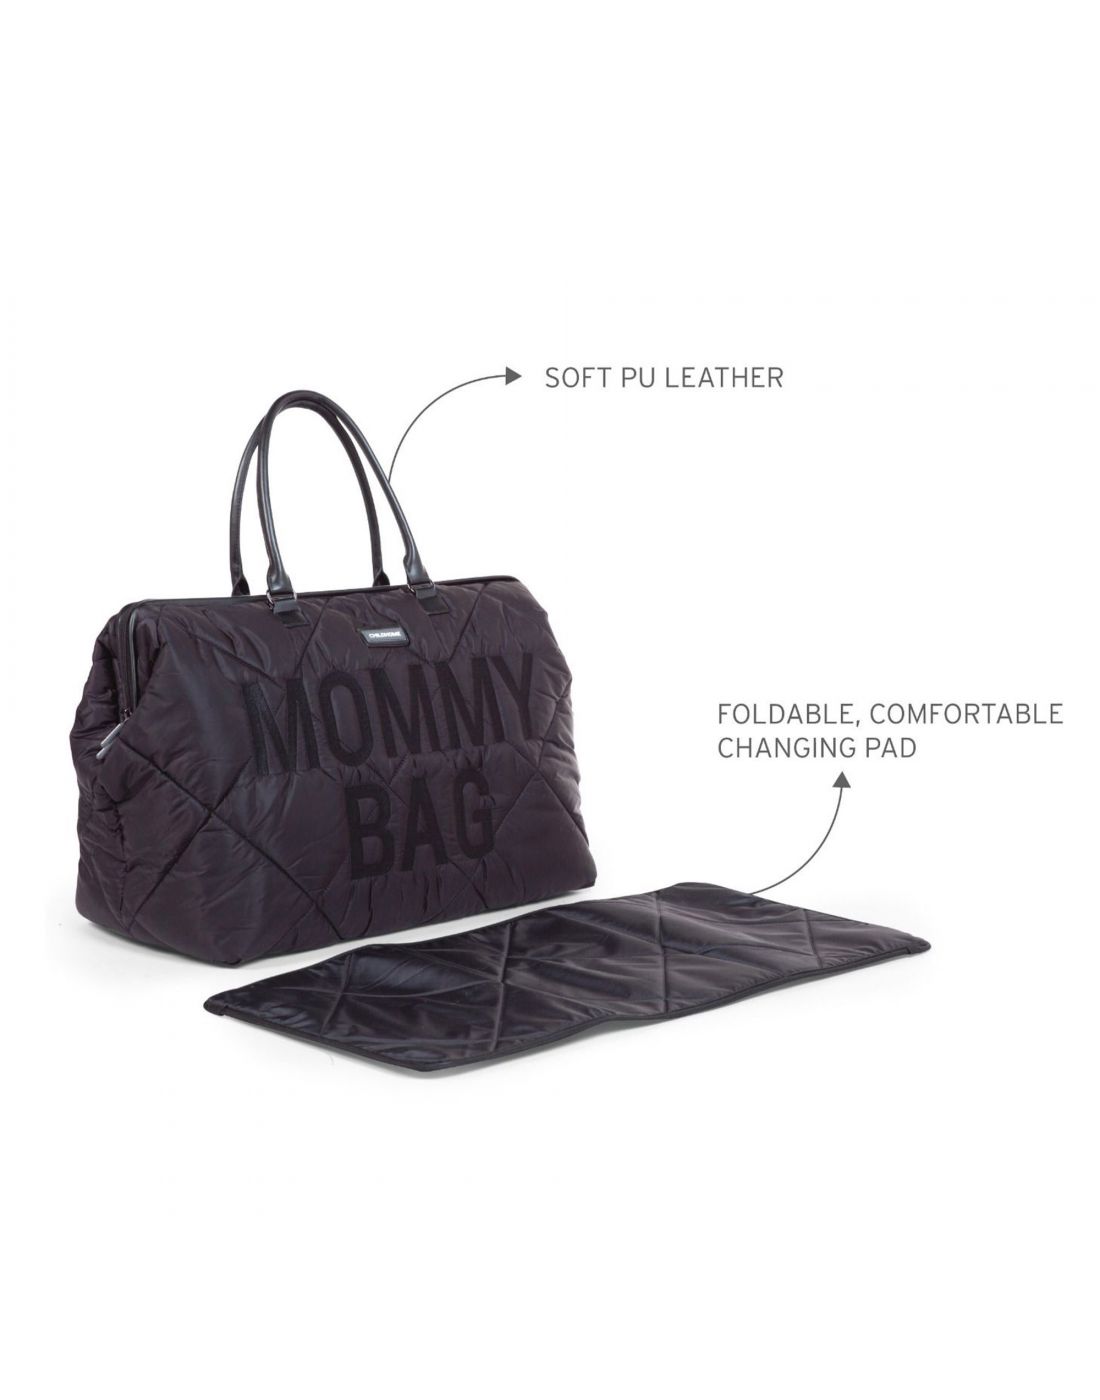 Τσάντα αλλαγής Childhome Mommy Bag Puffered Black